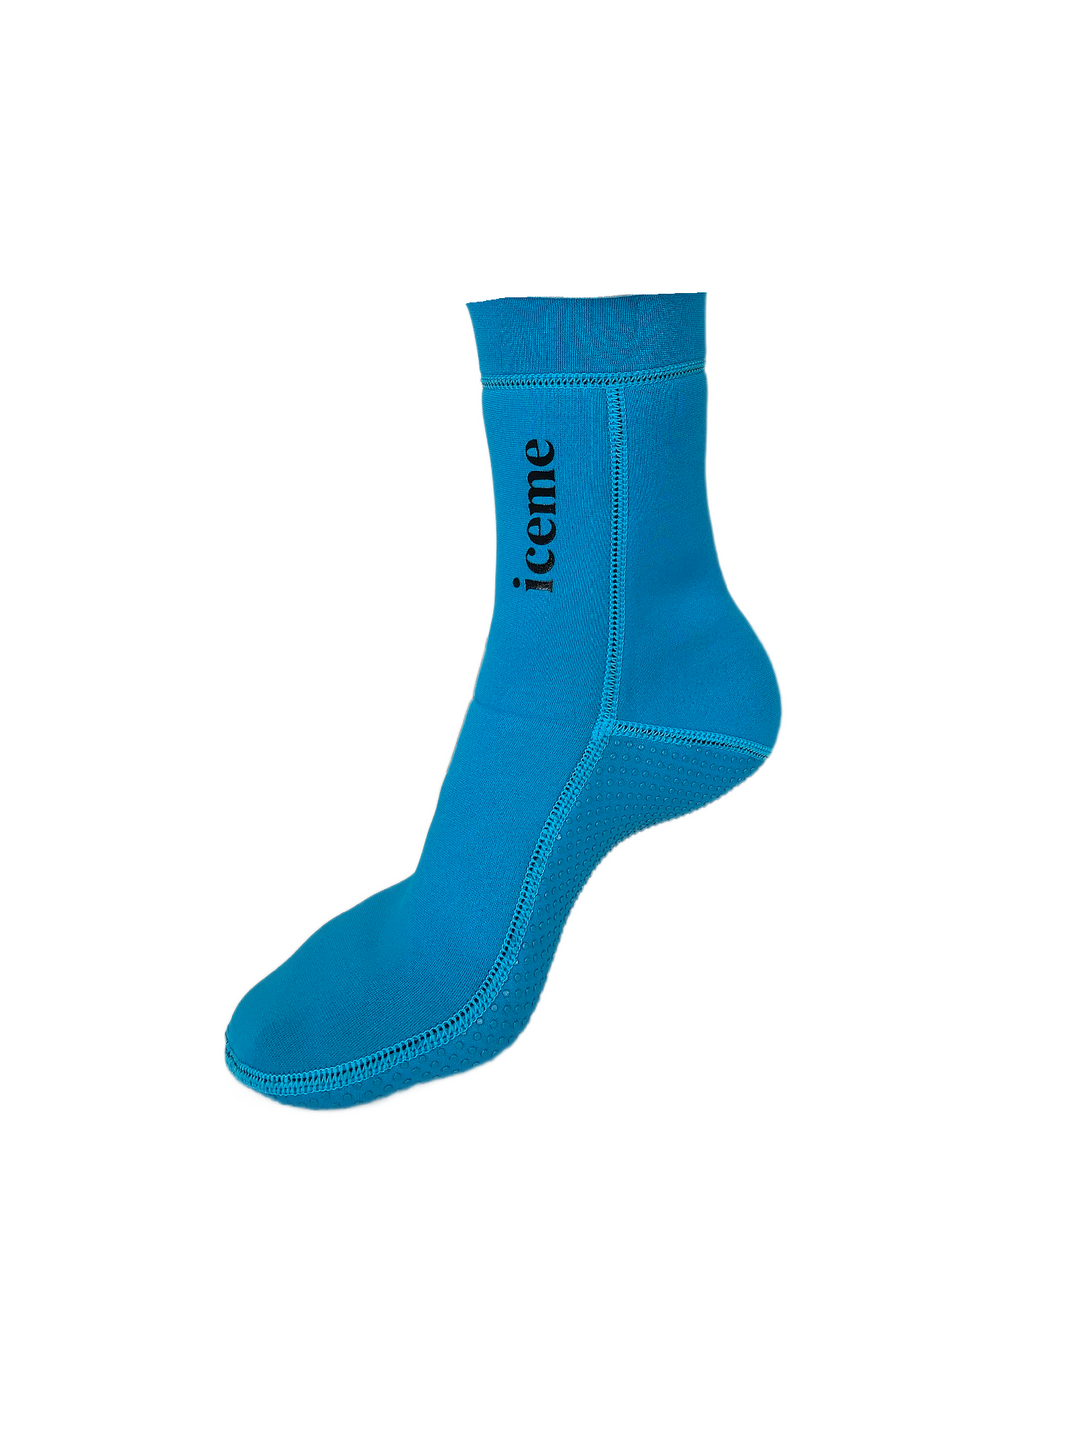 Iceme Neoprene Socks - Azure Blue